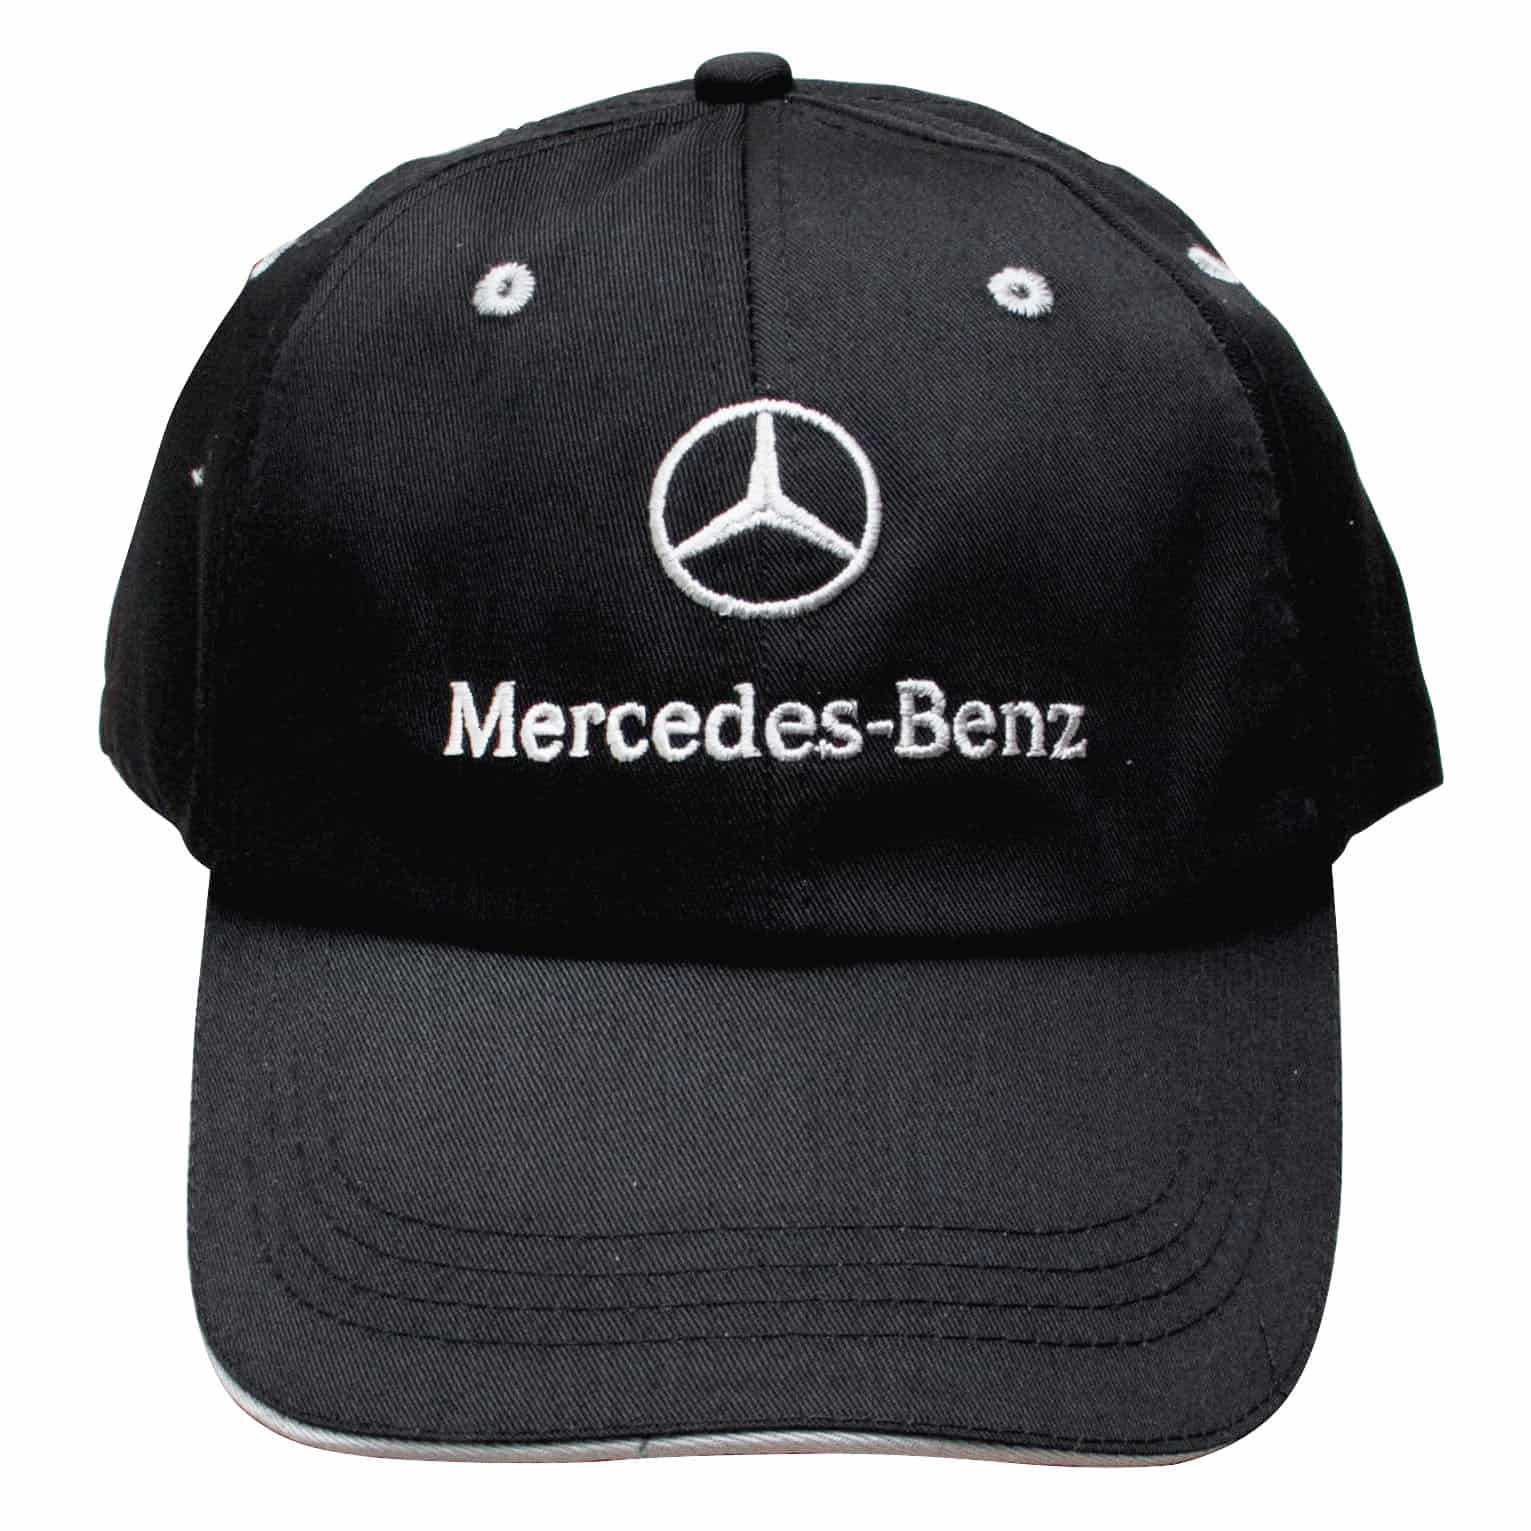 New Lewis Hamilton Racing Cap F1 Mercedes Benz Formula One Baseball Hat ...